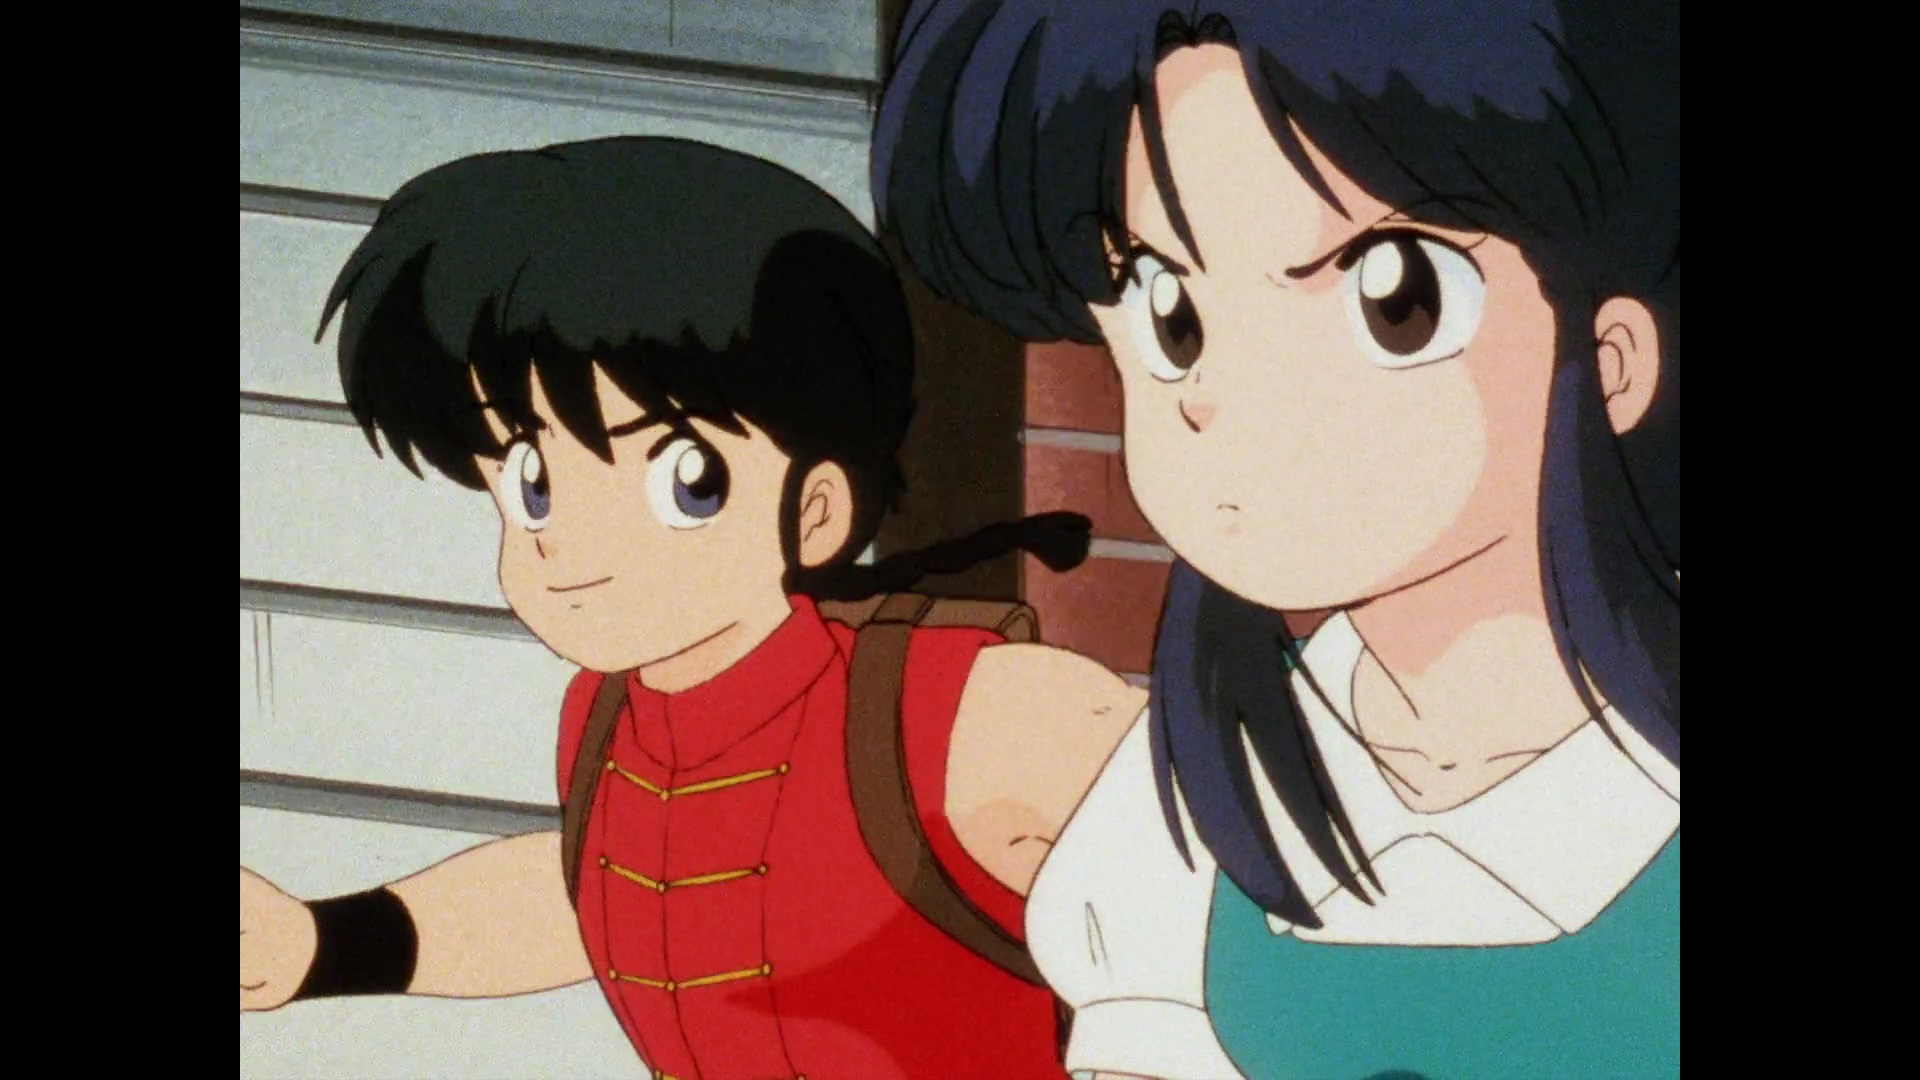 Ranma Saotome und Akane Tendo teilen sich einen Moment, während sie in einer Szene aus dem TV-Anime Ranma 1/2 zur Schule joggen.